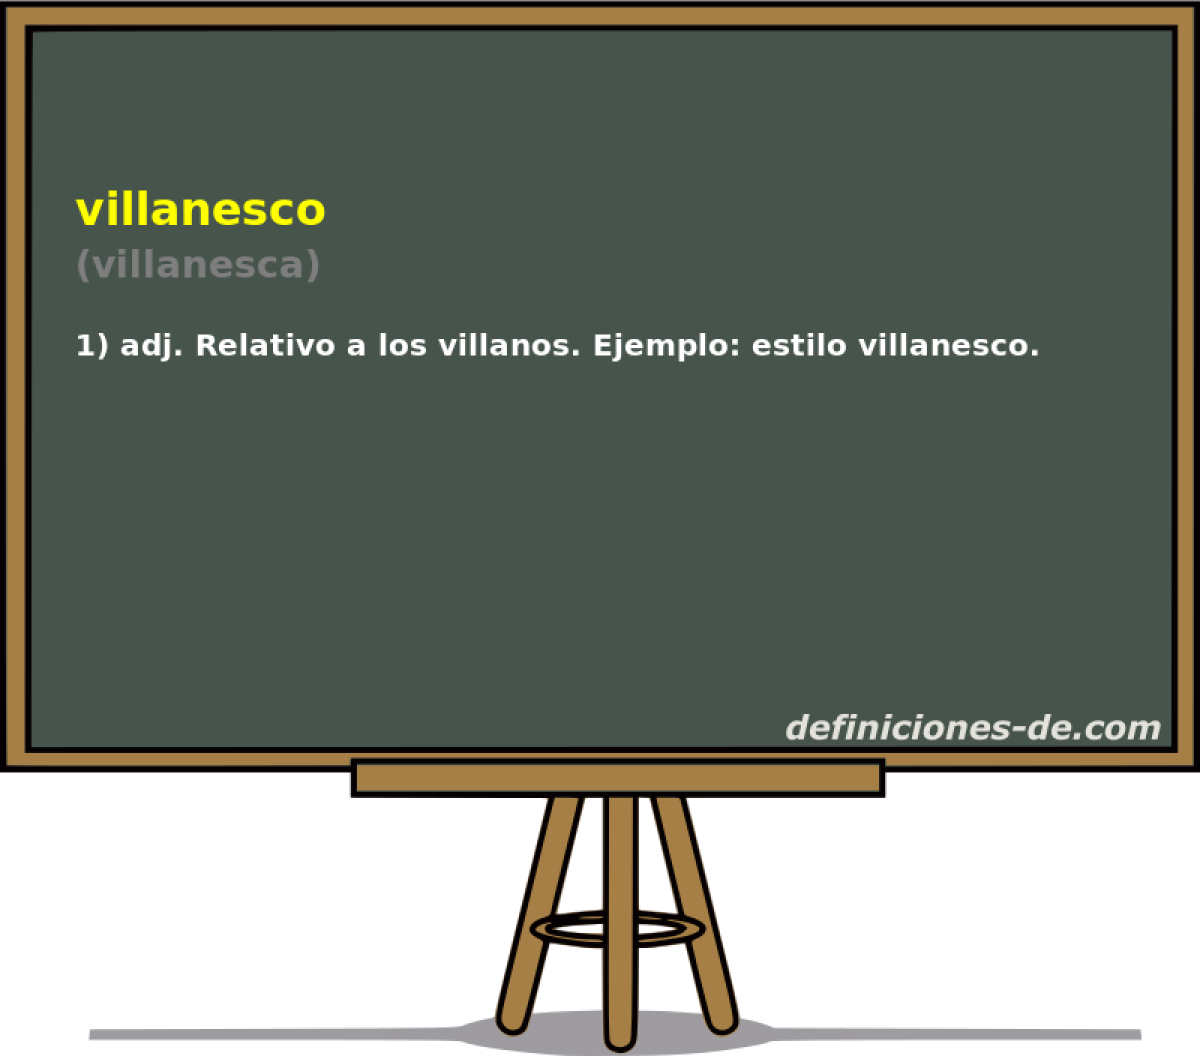 villanesco (villanesca)